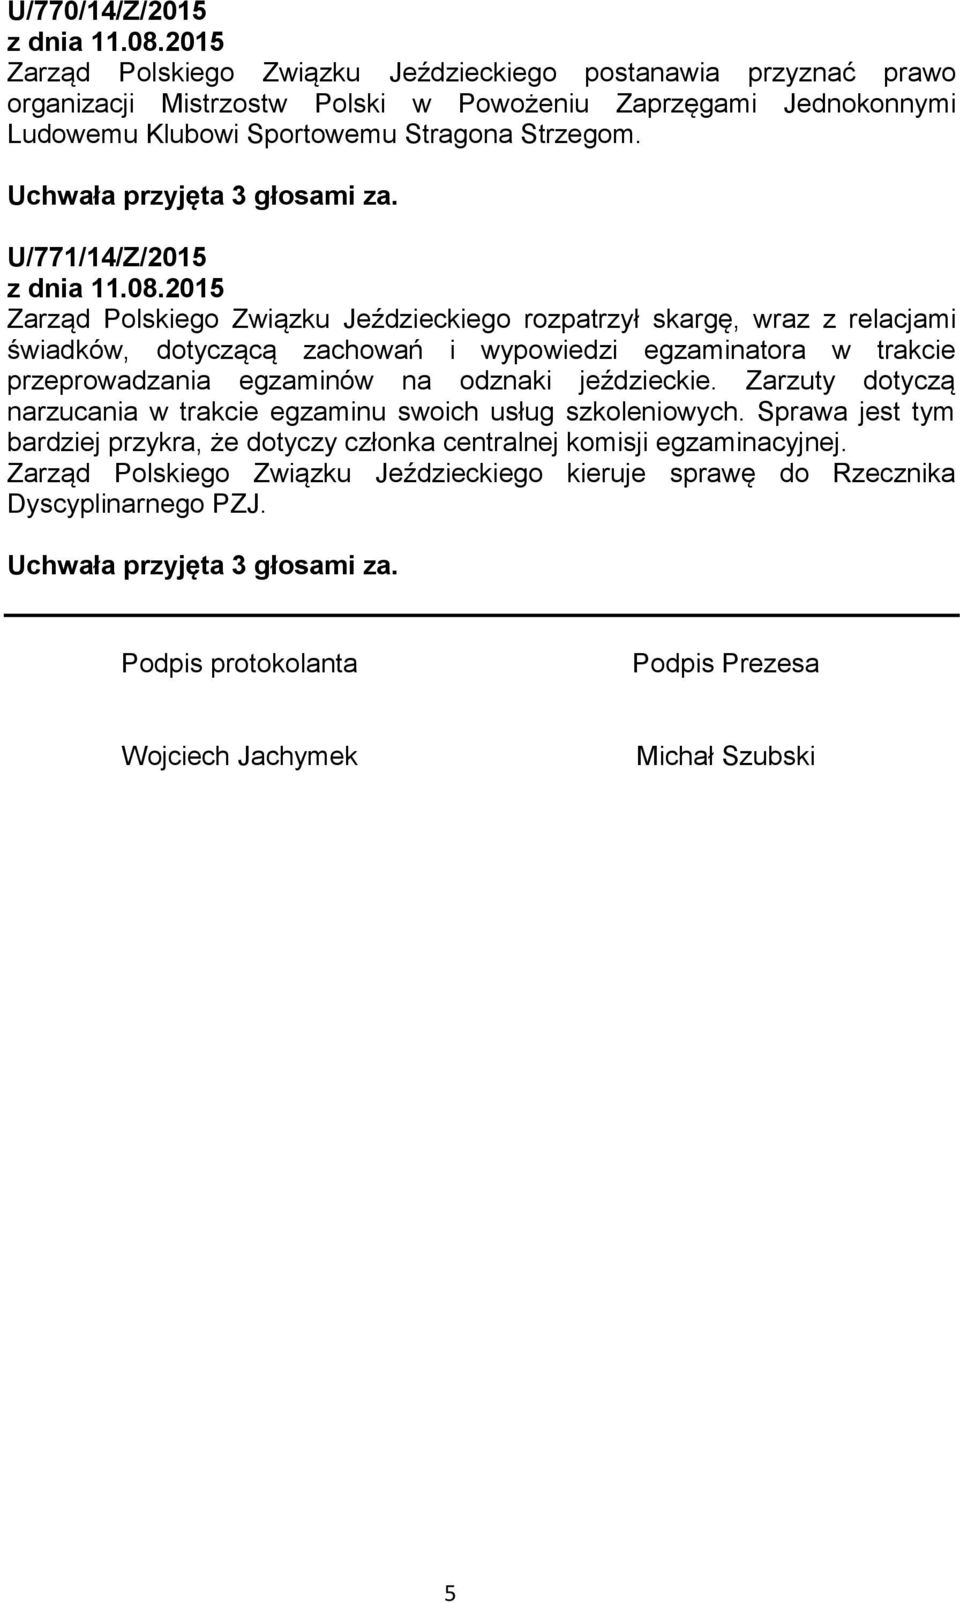 U/771/14/Z/2015 Zarząd Polskiego Związku Jeździeckiego rozpatrzył skargę, wraz z relacjami świadków, dotyczącą zachowań i wypowiedzi egzaminatora w trakcie przeprowadzania